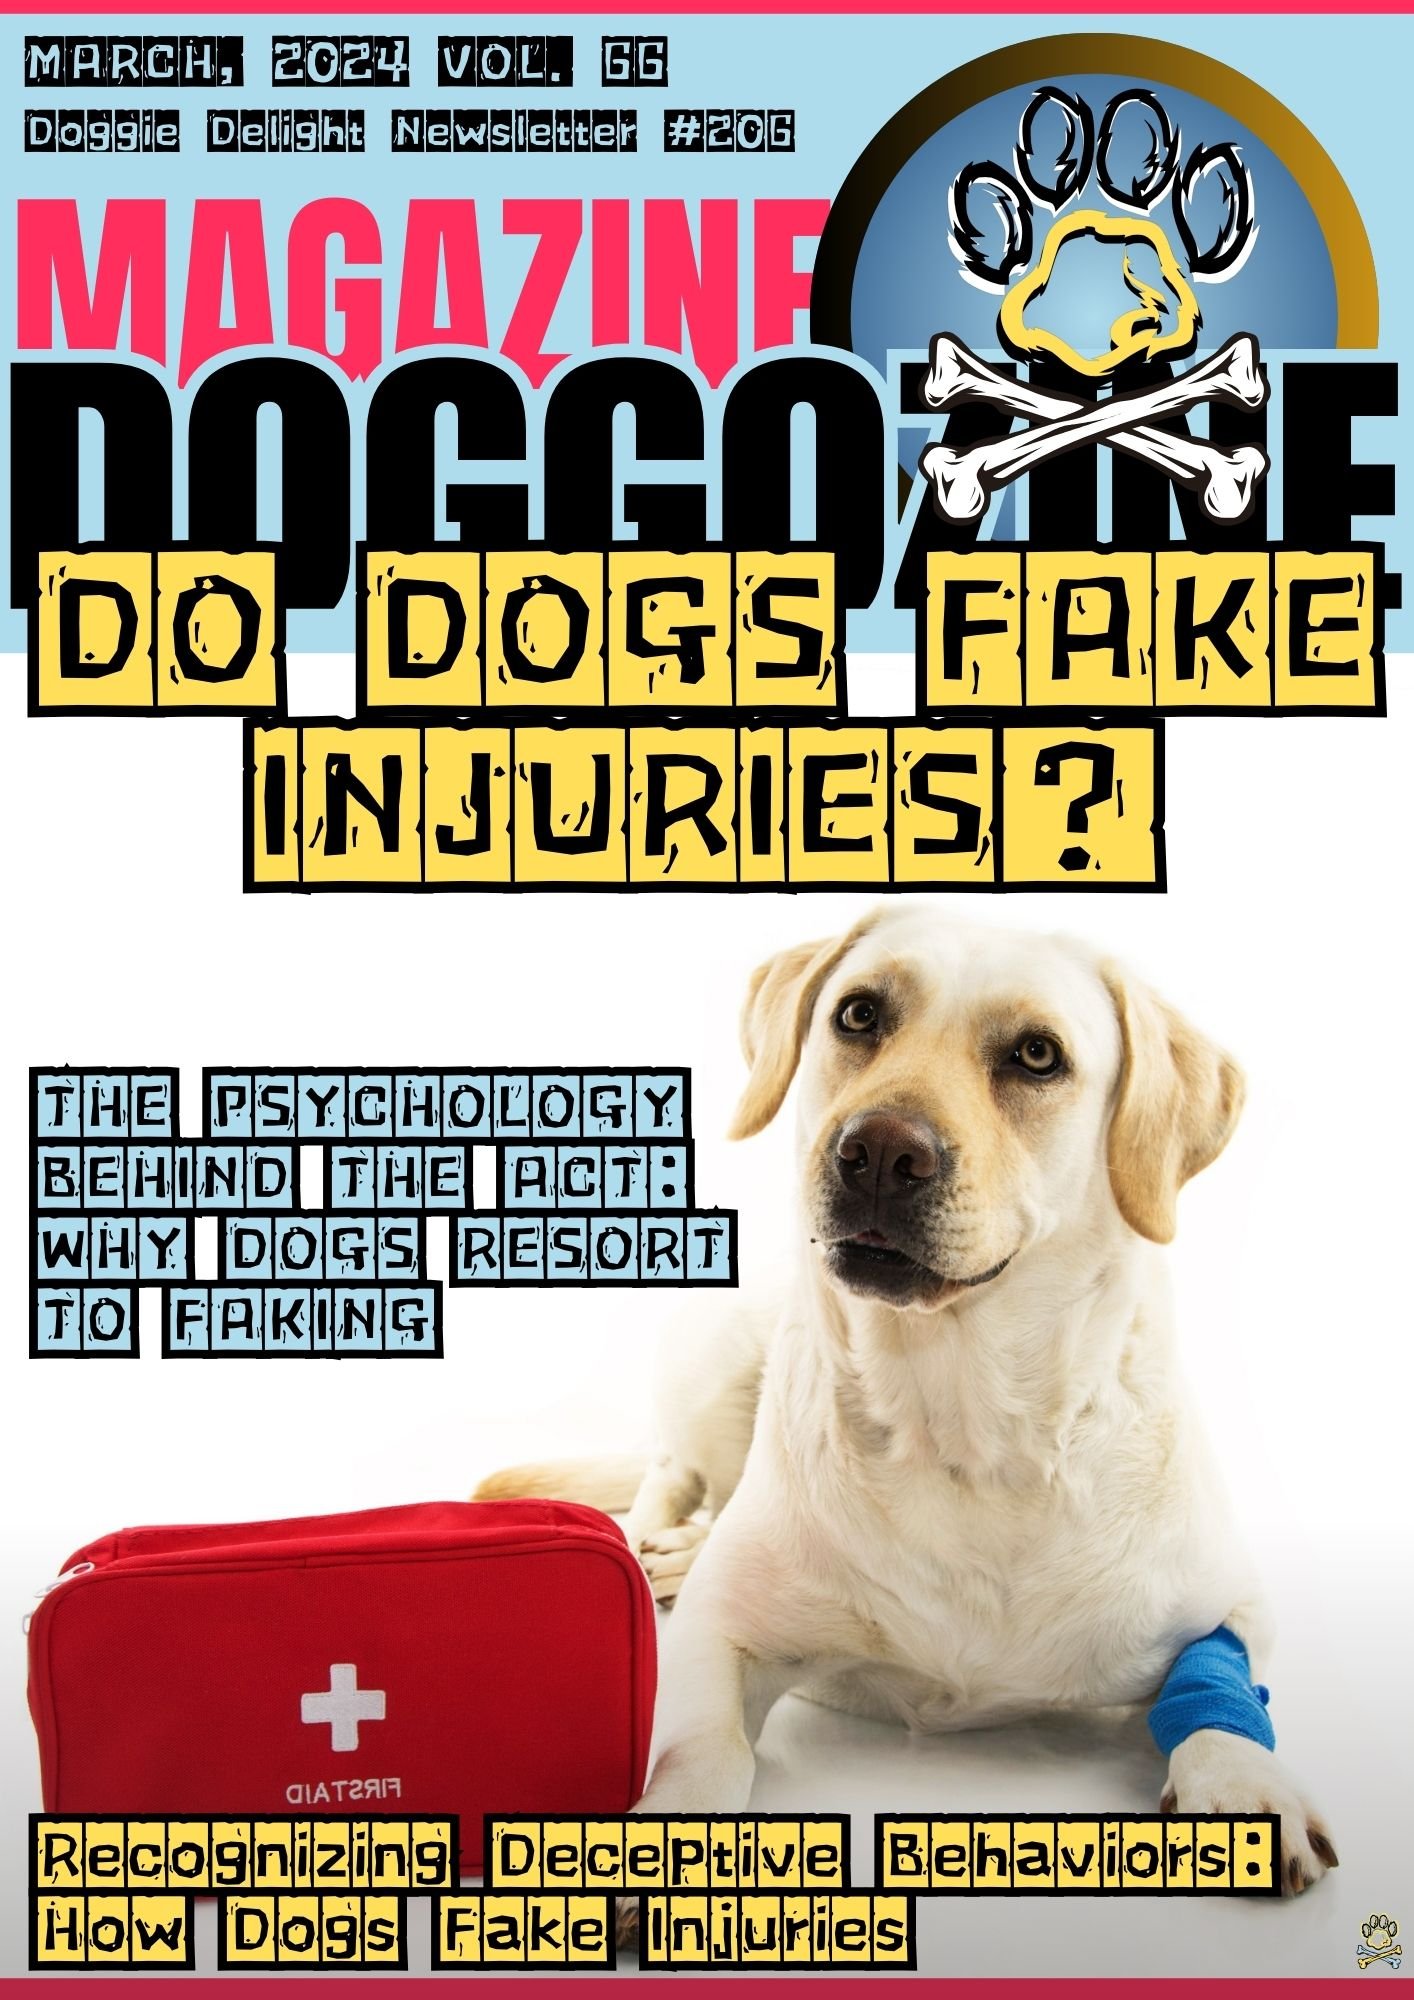 DO DOGS FAKE INJURIES